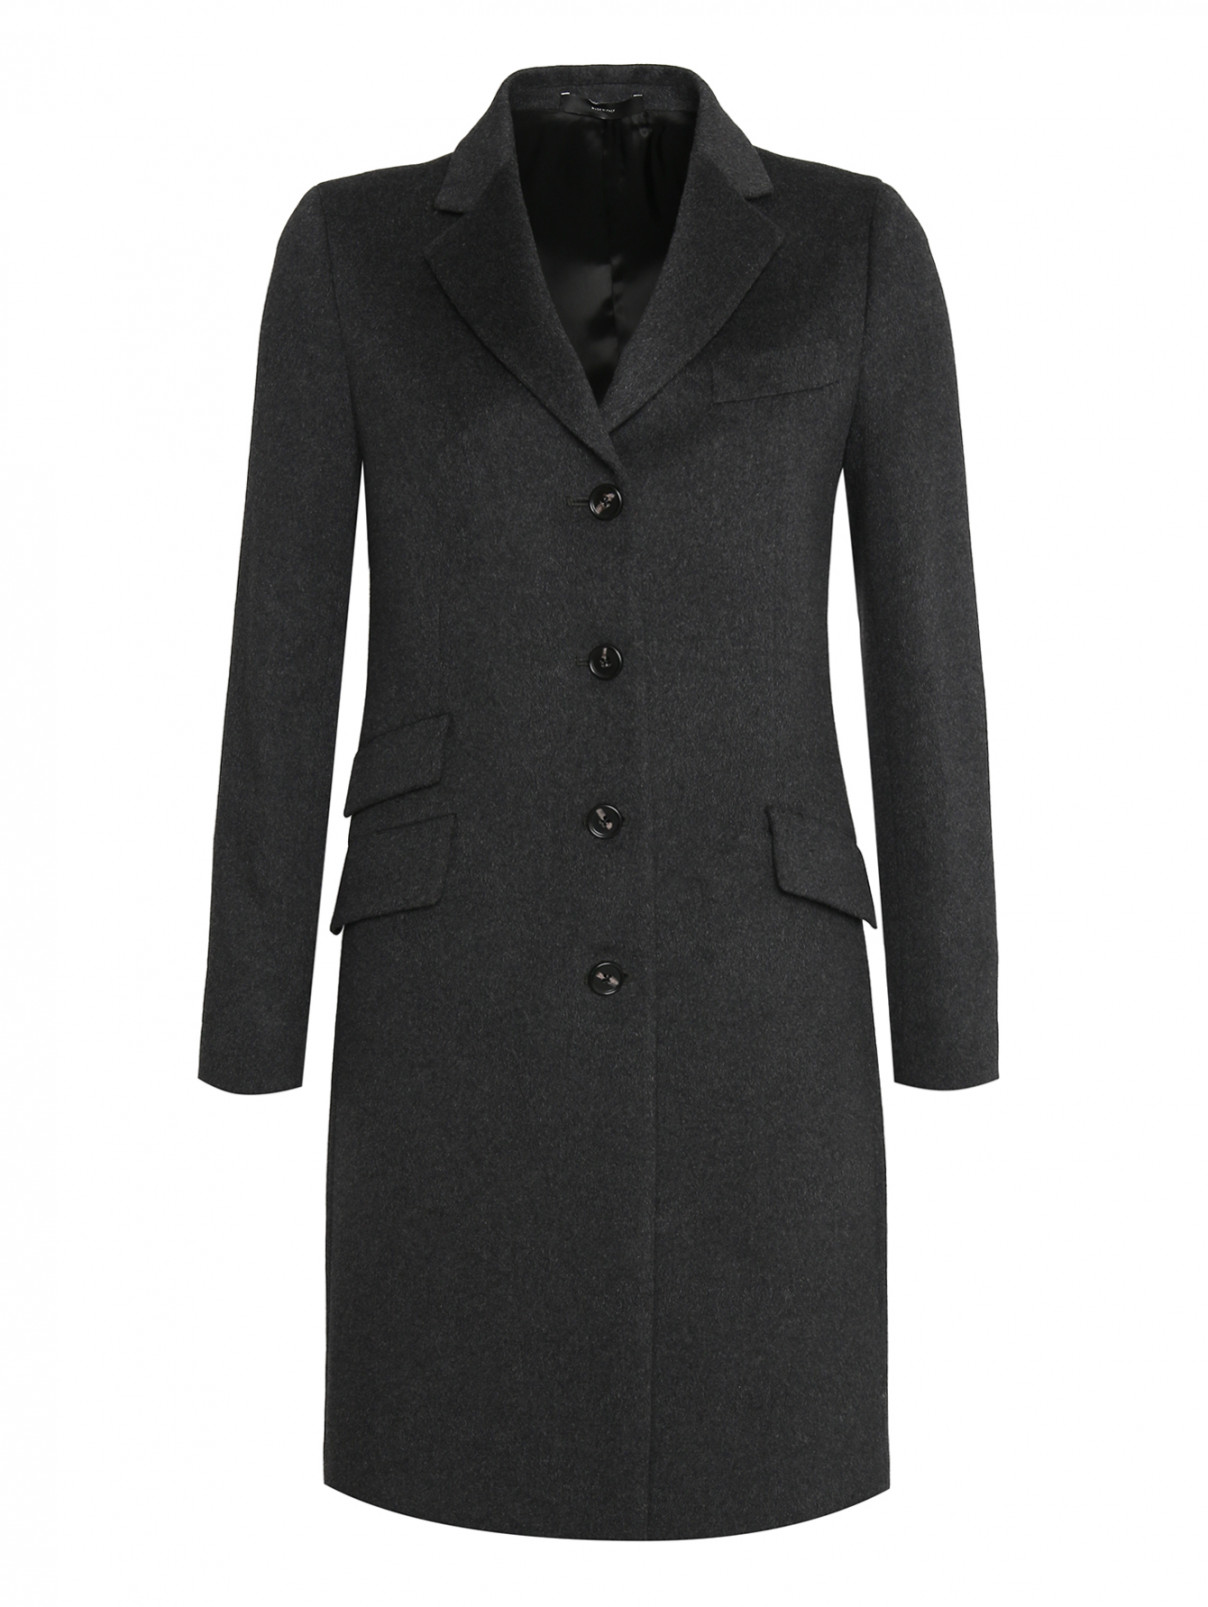 Однобортное пальто из шерсти Paul Smith  –  Общий вид  – Цвет:  Серый